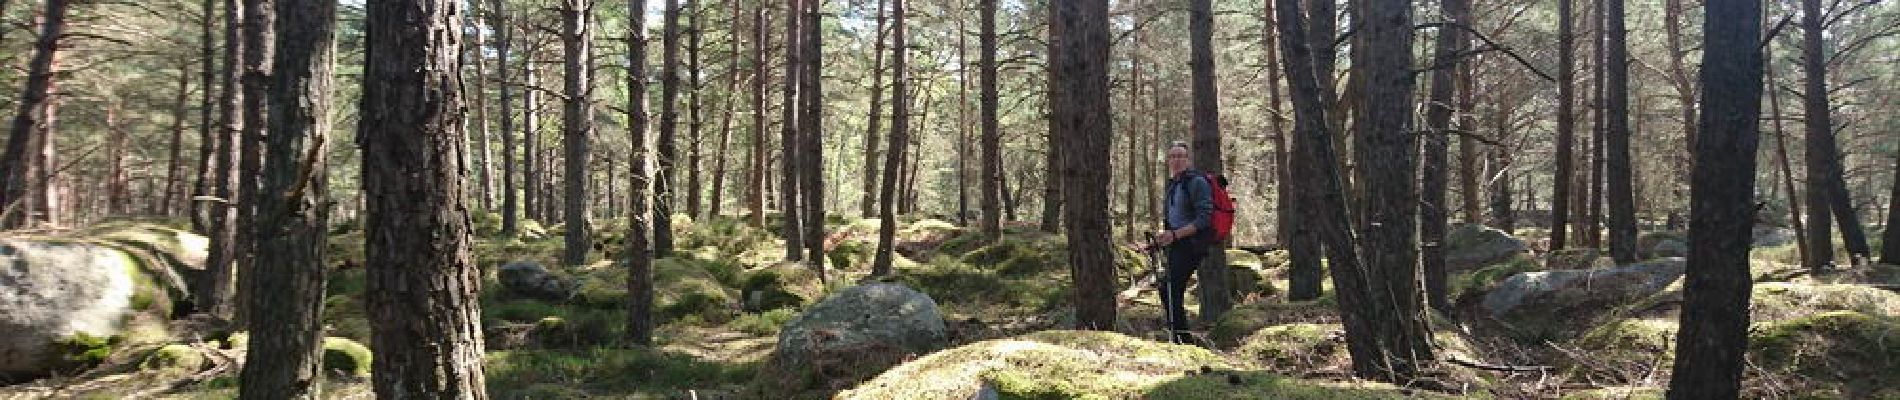 POI Fontainebleau - 05 - Une forêt de bosses moussues - Photo